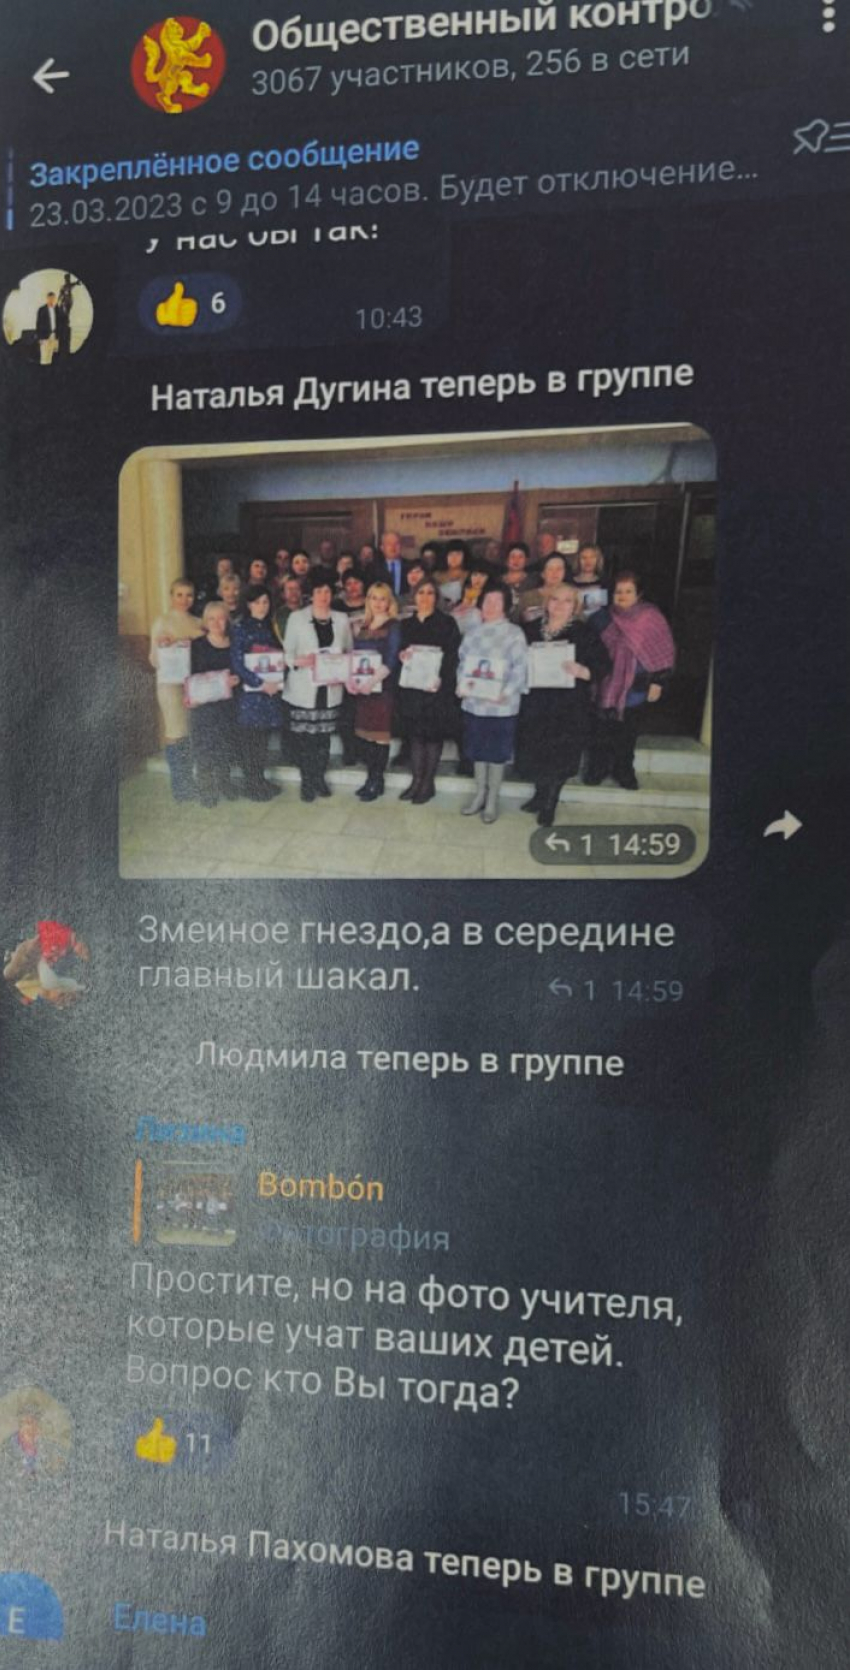 "Змеиное гнездо, а в середине — главный шакал": активиста затравили в суде в Котово, - «Блокнот Волгограда"